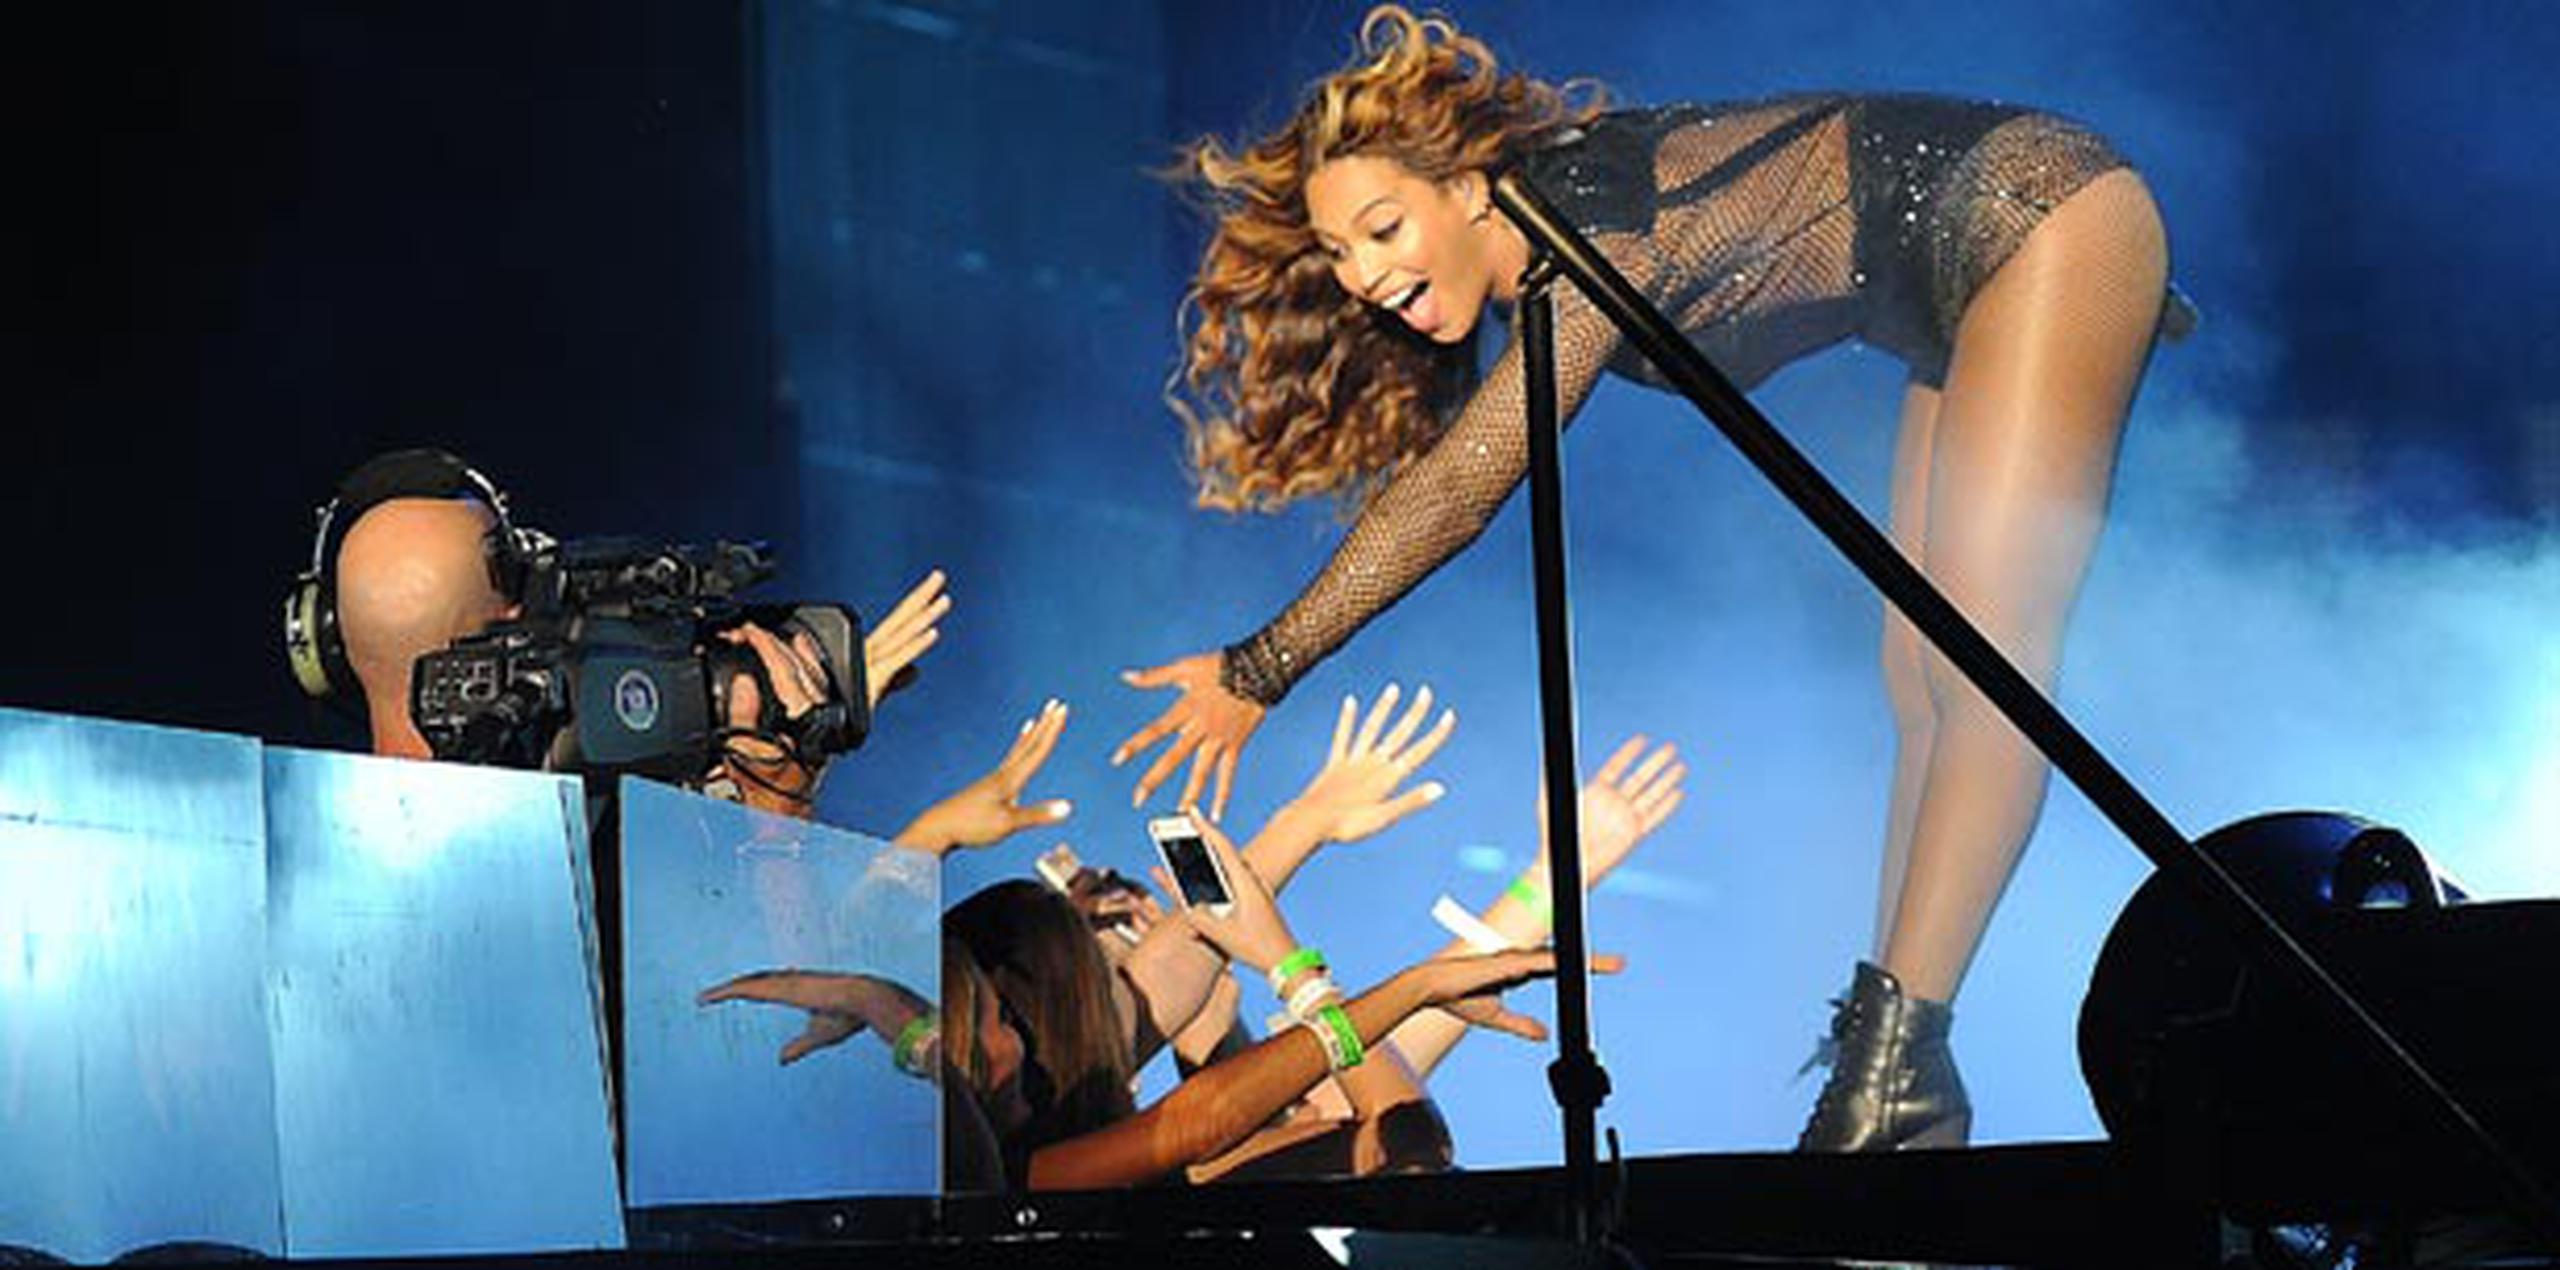 La trifulca ocurrió en el concierto de Jay-Z y Beyonce celebrado en el Rose Bowl de Pasadena, California. (AP)